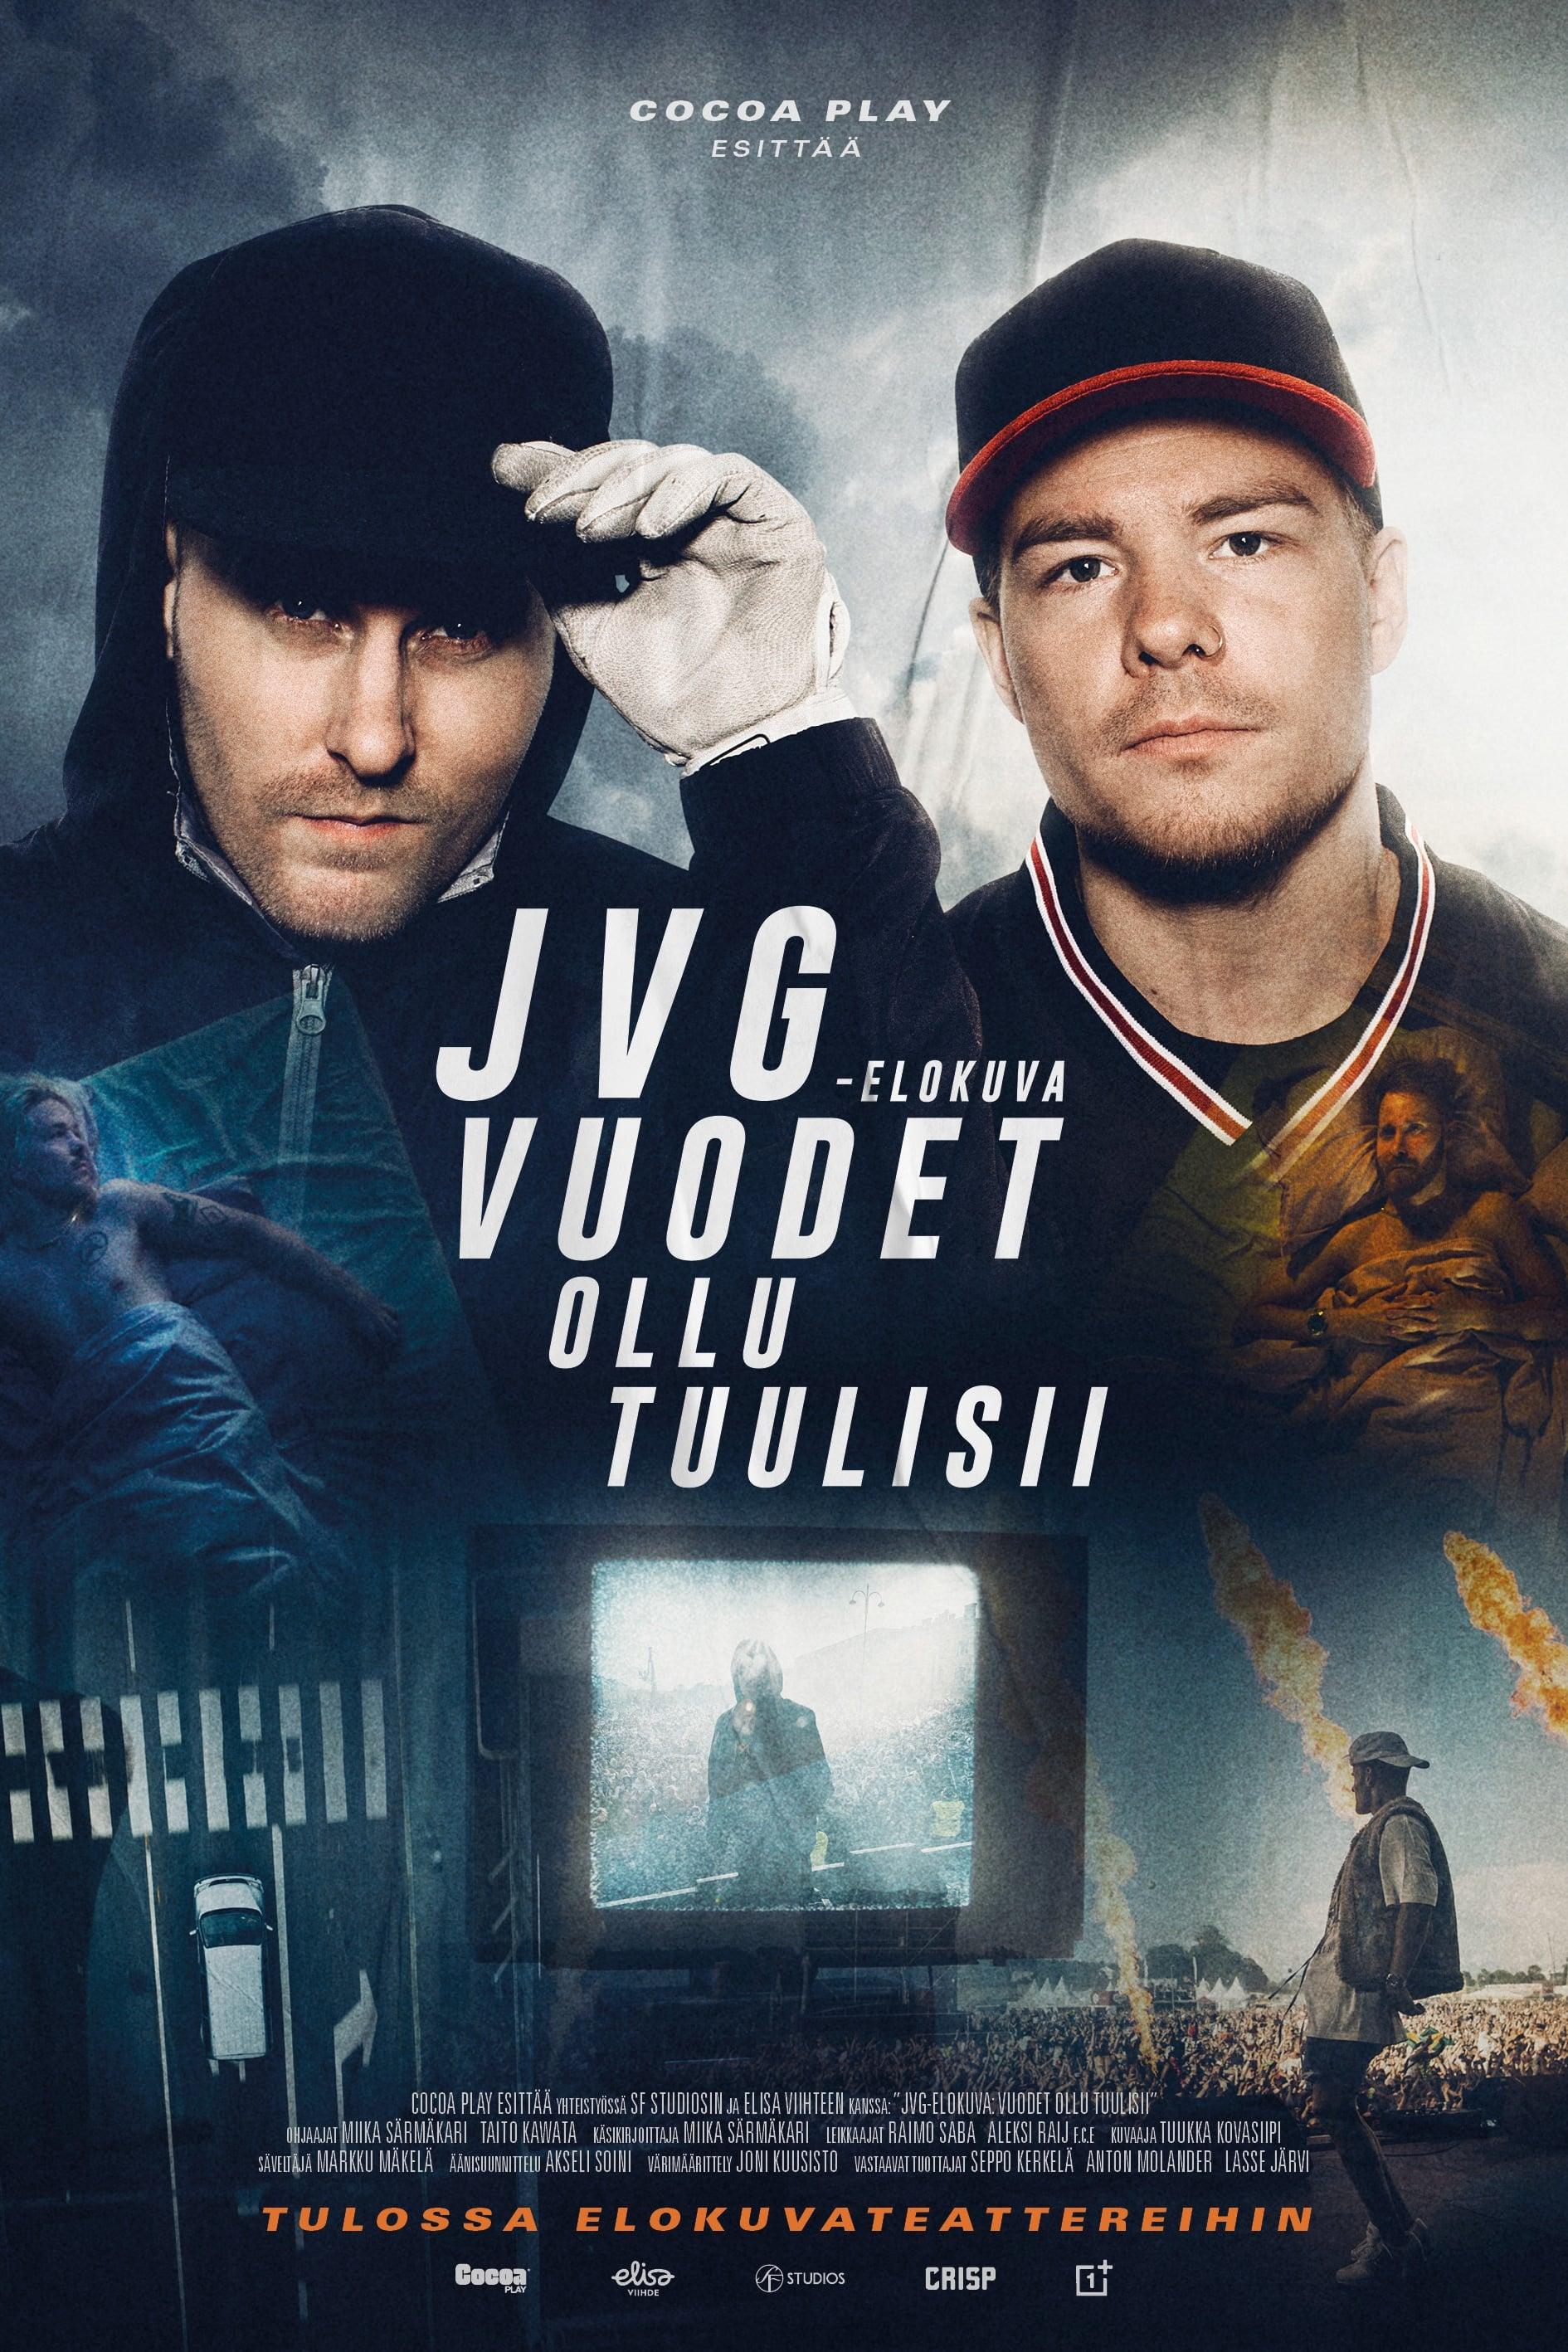 JVG-elokuva: Vuodet ollu tuulisii poster